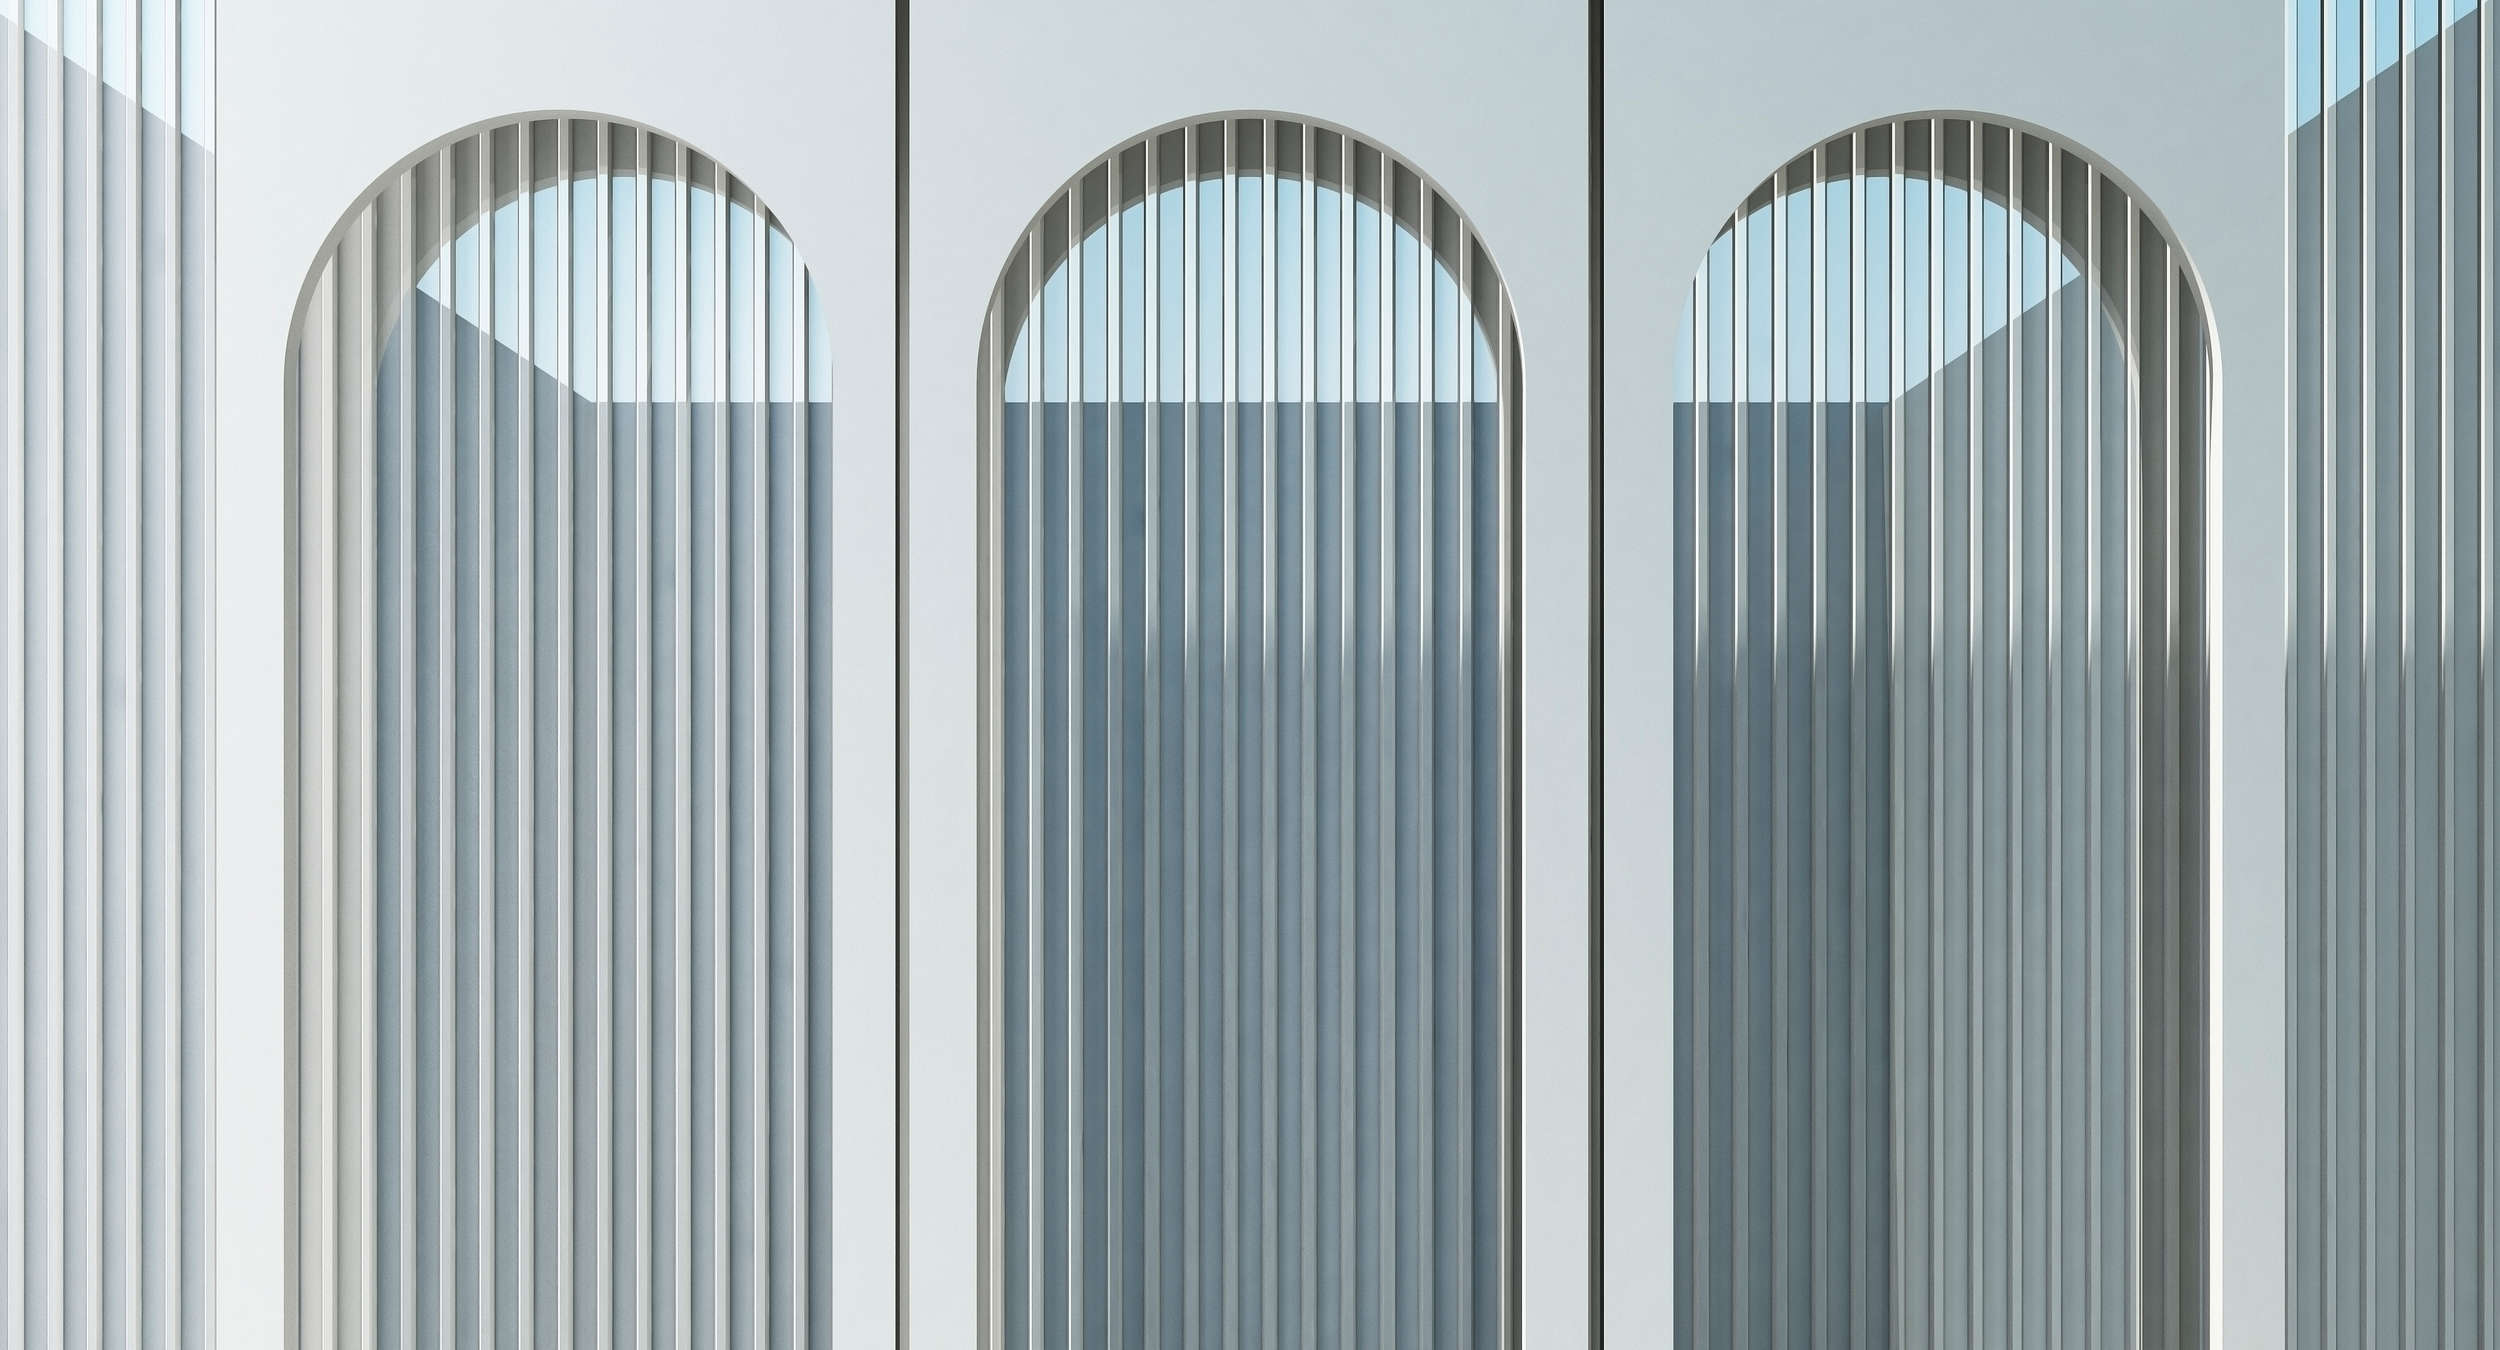             Escape Room 1 - Papier peint panoramique architecture moderne bleu & gris
        